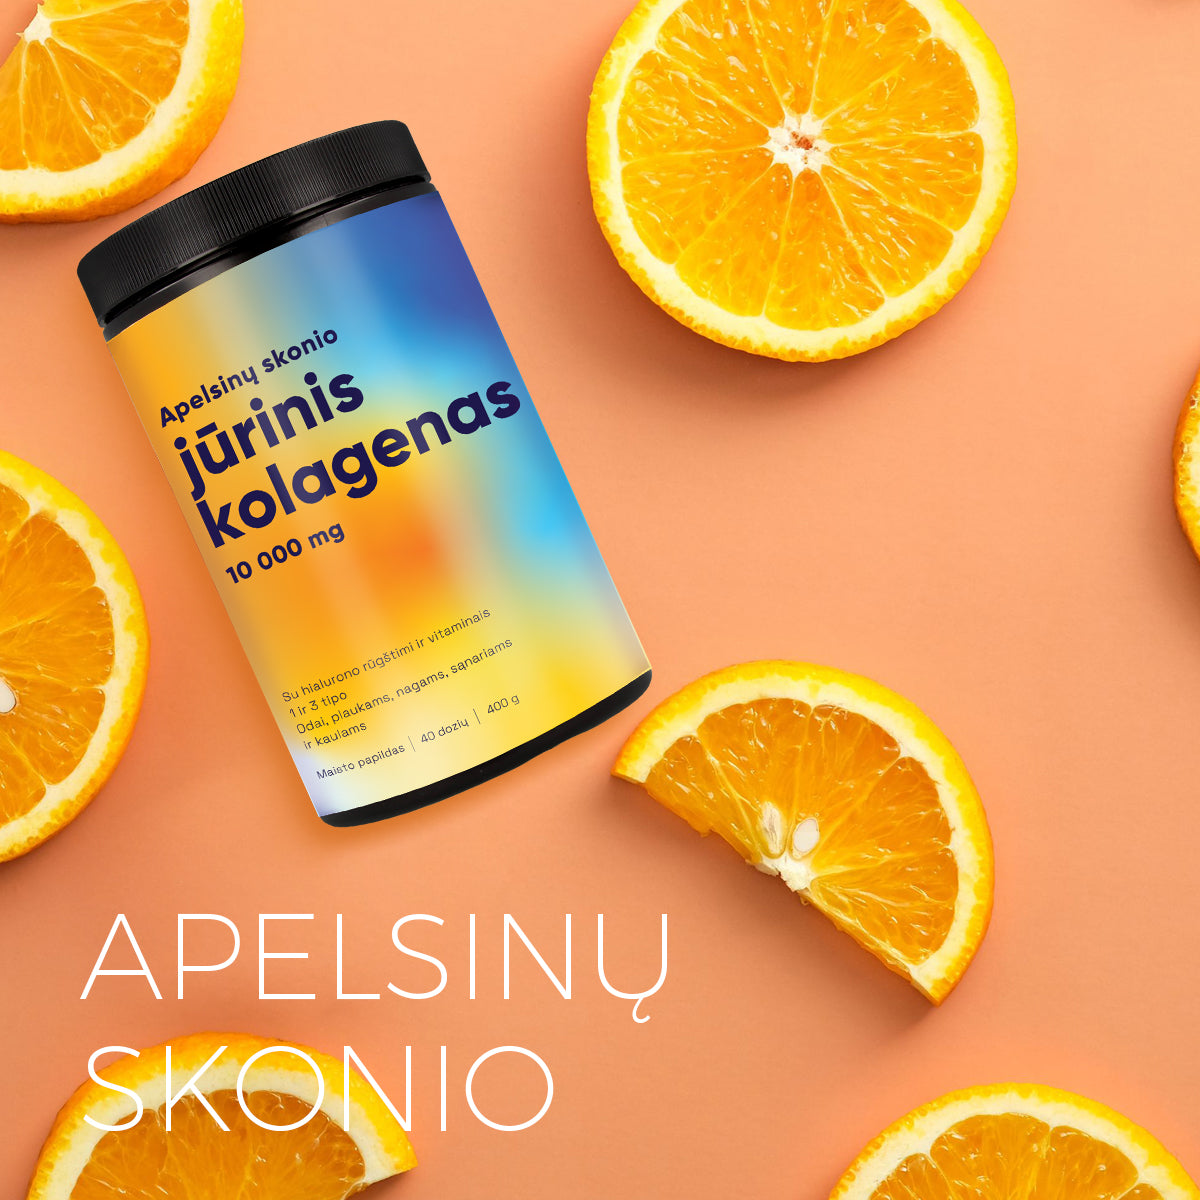 Melior 10000mg Natūralus Jūrinis kolagenas Apelsinų skonio su hialurono rūgštimi ir vitaminais, 400g.